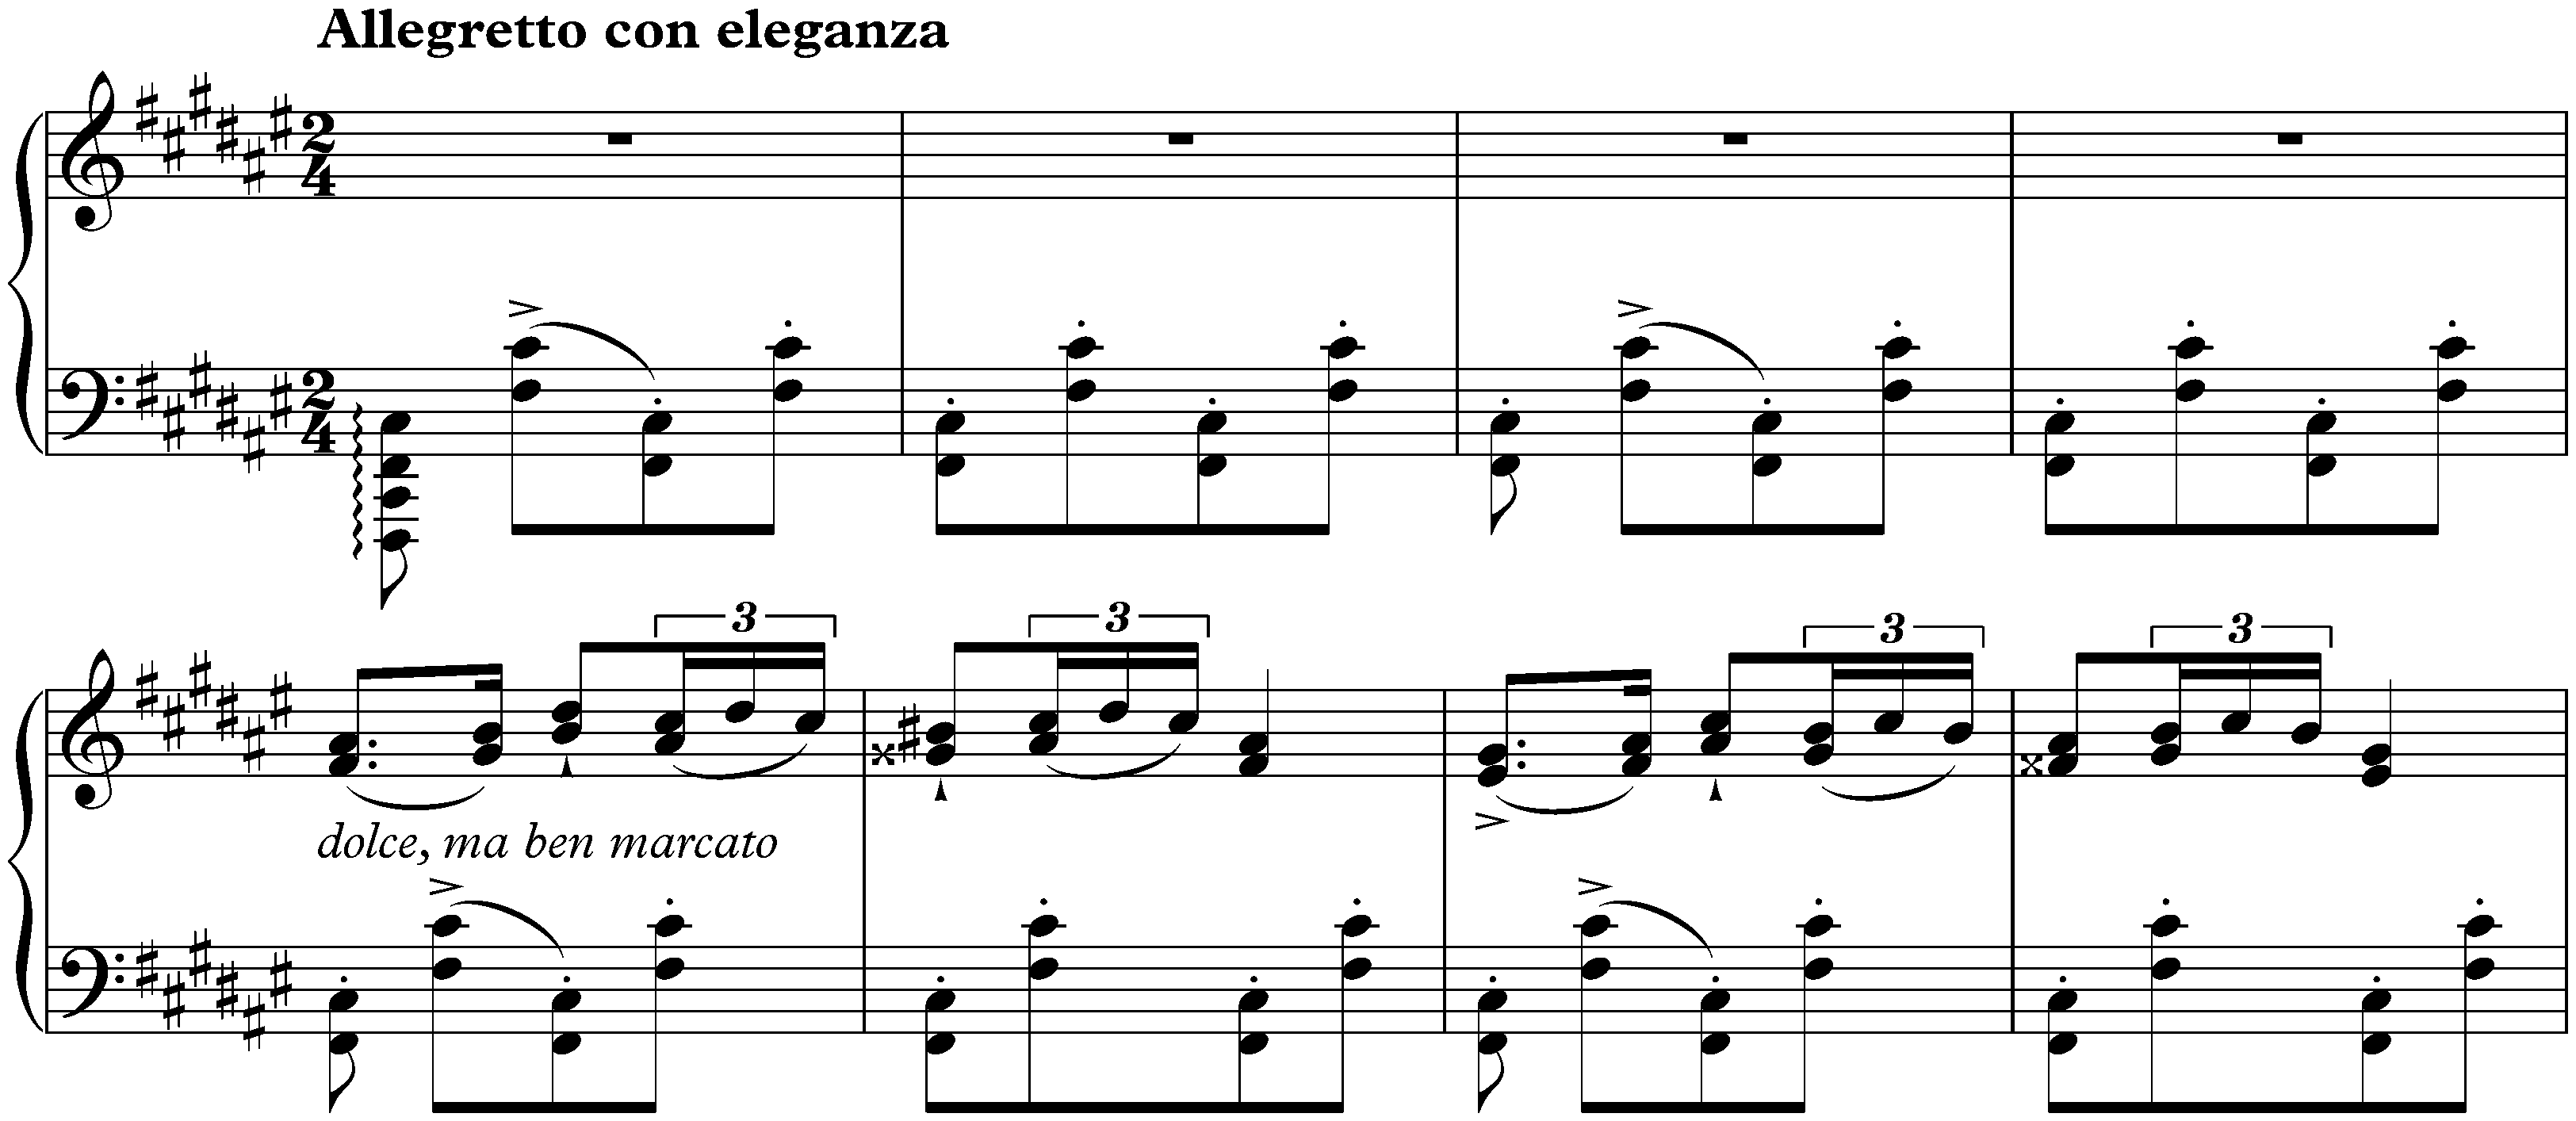 Magyar Dalok and Magyar Rapszódiák, S. 242; 19. F-sharp minor